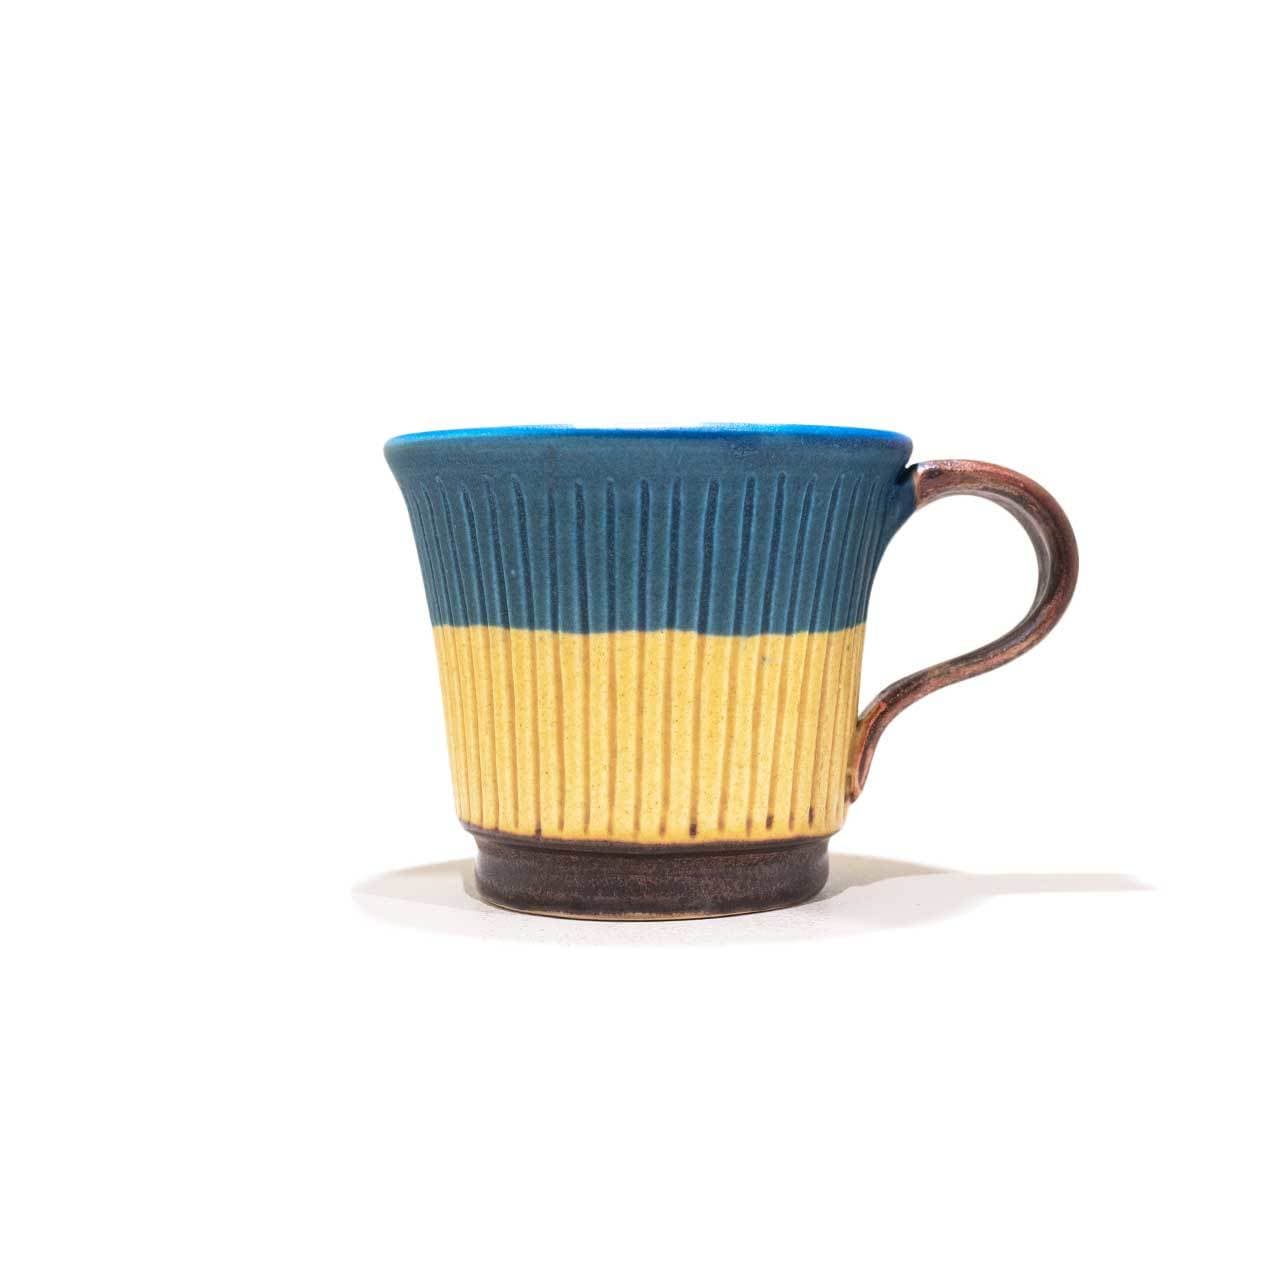 工房ことりの しのぎコーヒーカップ 青と黄色のツートン